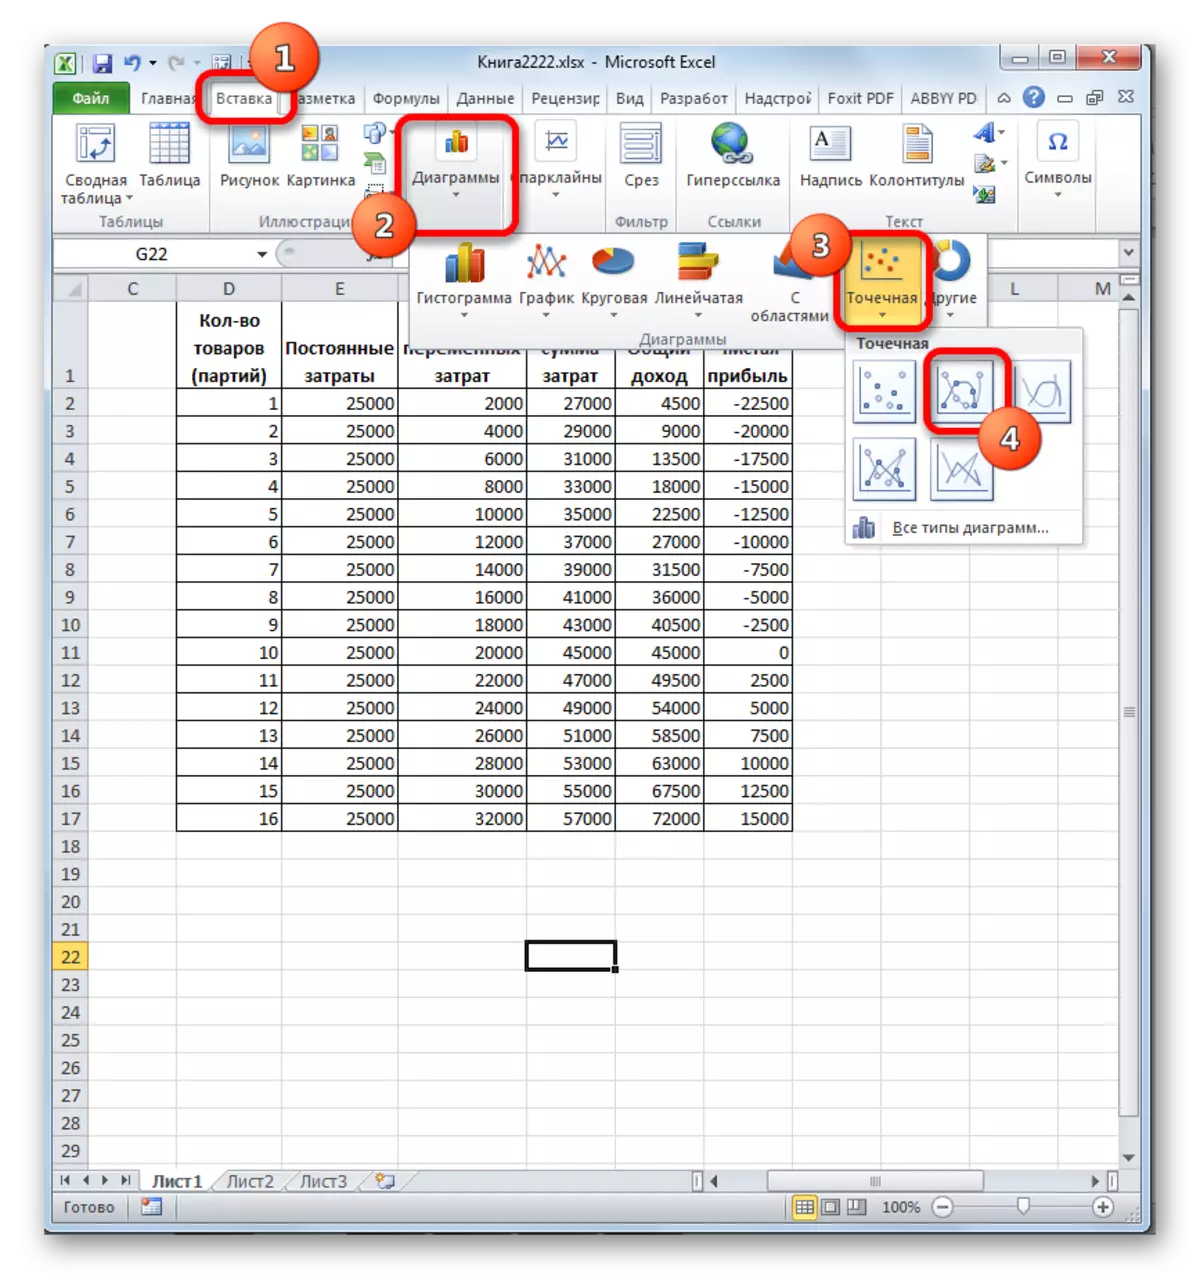 Wielt den Typ vun der Charts a Microsoft Excel